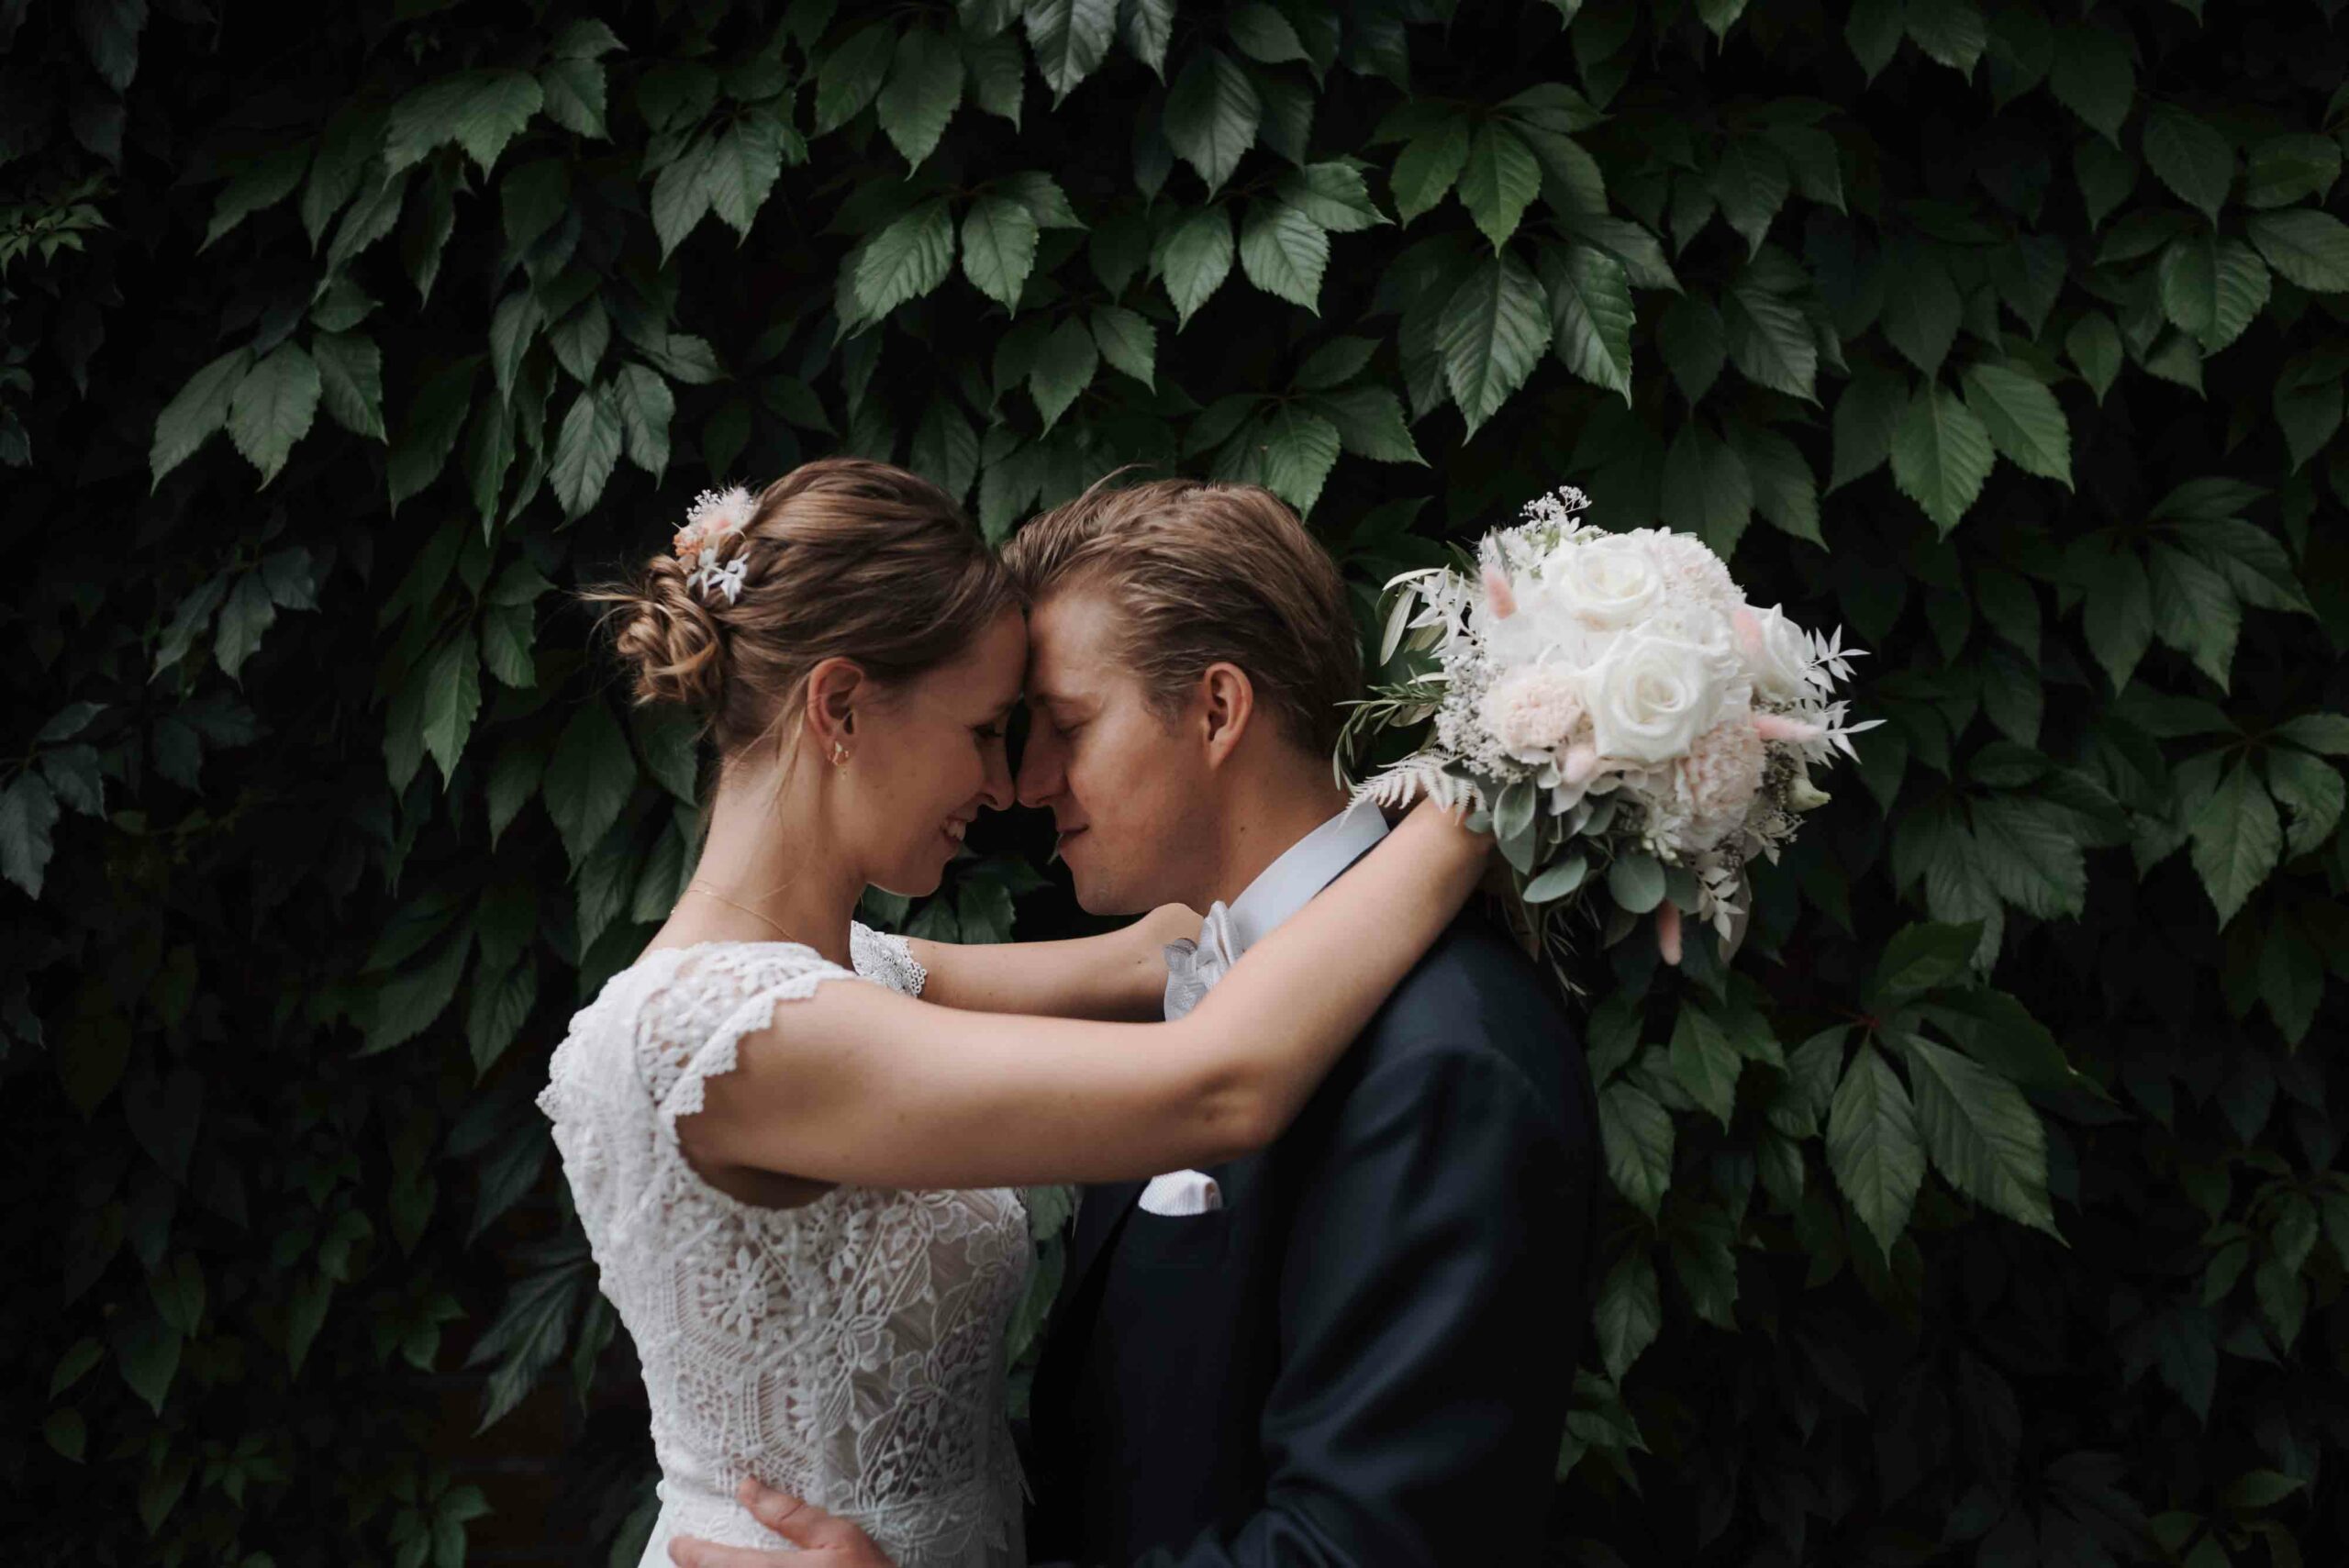 Ein Brautpaar in inniger Umarmung vor einer grünen Blätterwand an einem Ort nahe dem Elbstrand in Hamburg. Die Braut hält einen Strauß aus weißen Rosen und der Bräutigam trägt einen dunklen Anzug. Der Hochzeitsfotograf in Hamburg hat diesen romantischen Moment festgehalten.